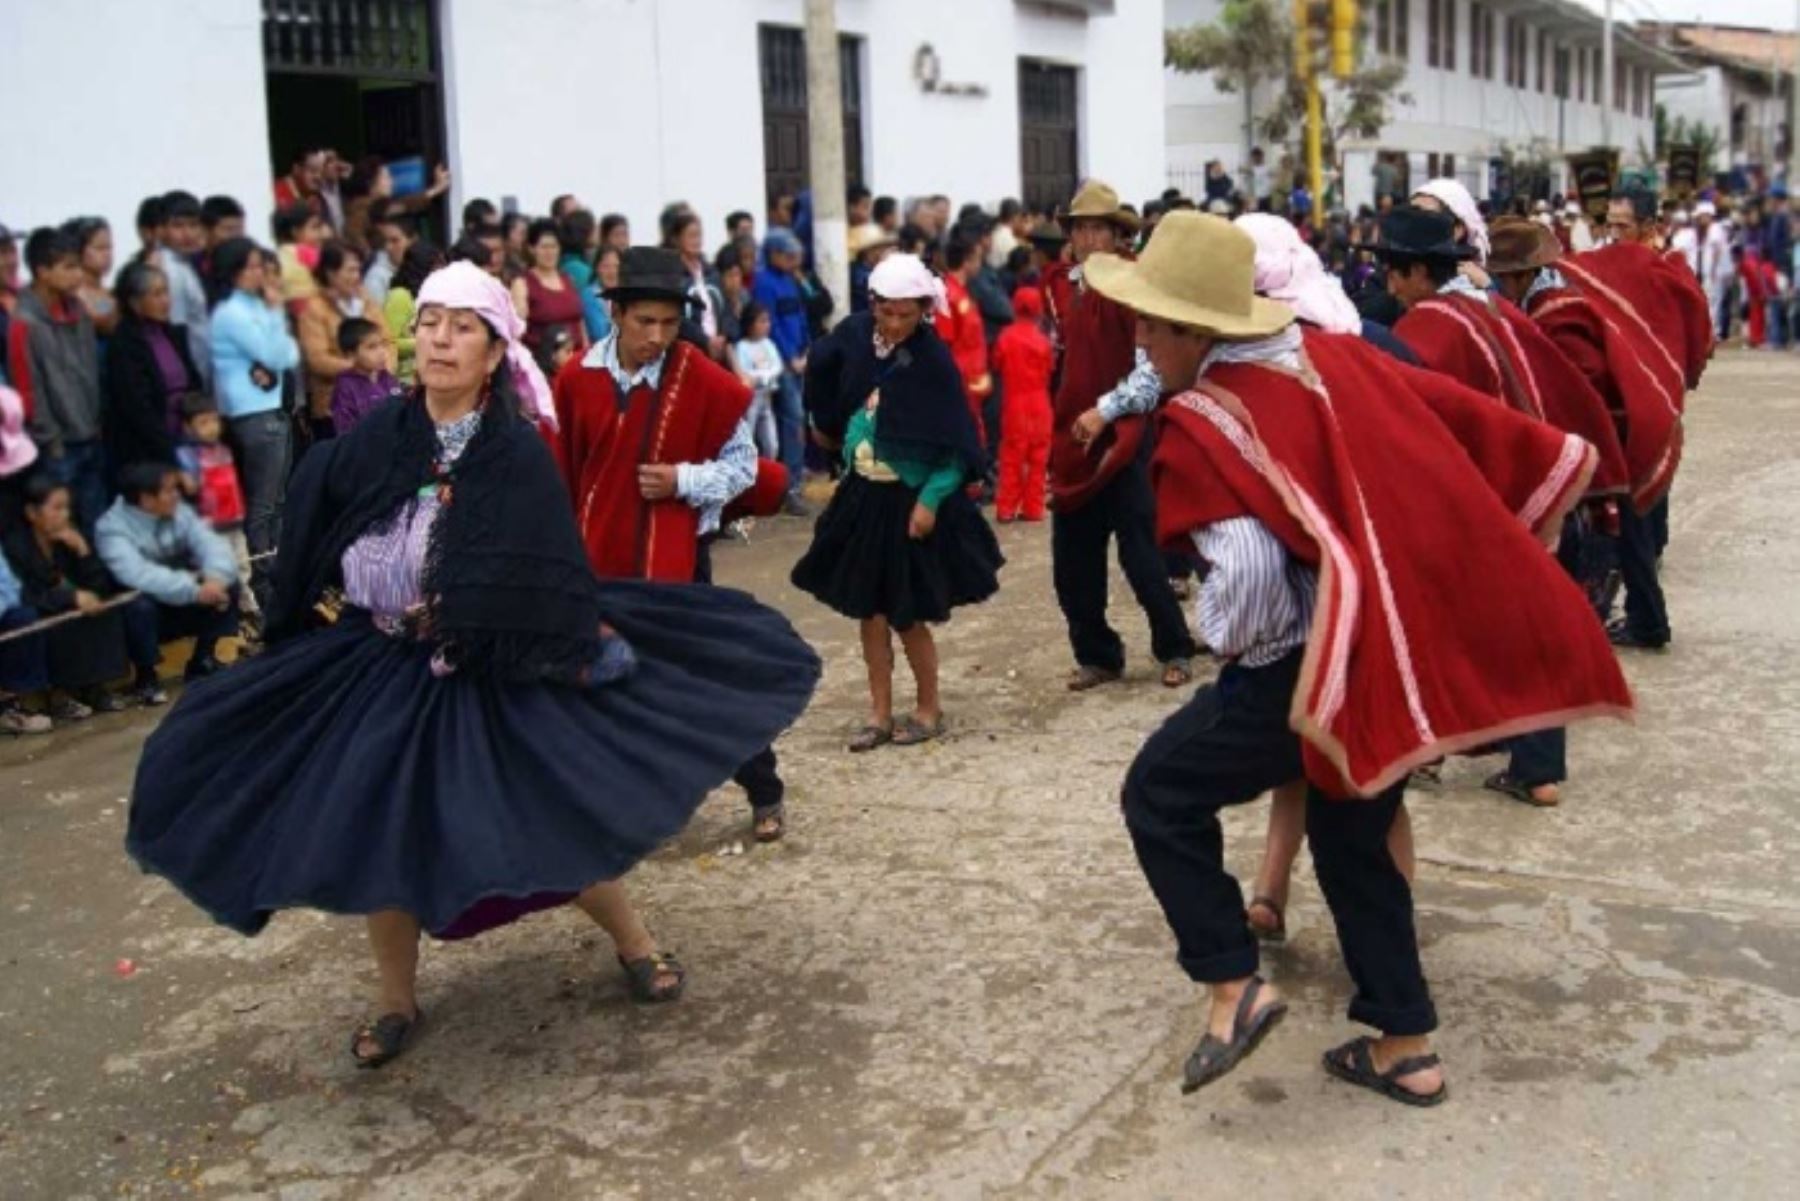 Amazonas se alista para celebrar la XXIV Semana Turística – Raymillacta 2019, del 30 de mayo al 8 de junio en la ciudad de Chachapoyas. Se trata del evento folclórico costumbrista más grande del nororiente del Perú, cuya finalidad es mostrar la cultura viva, tradiciones y costumbres de los pueblos de dicha región.